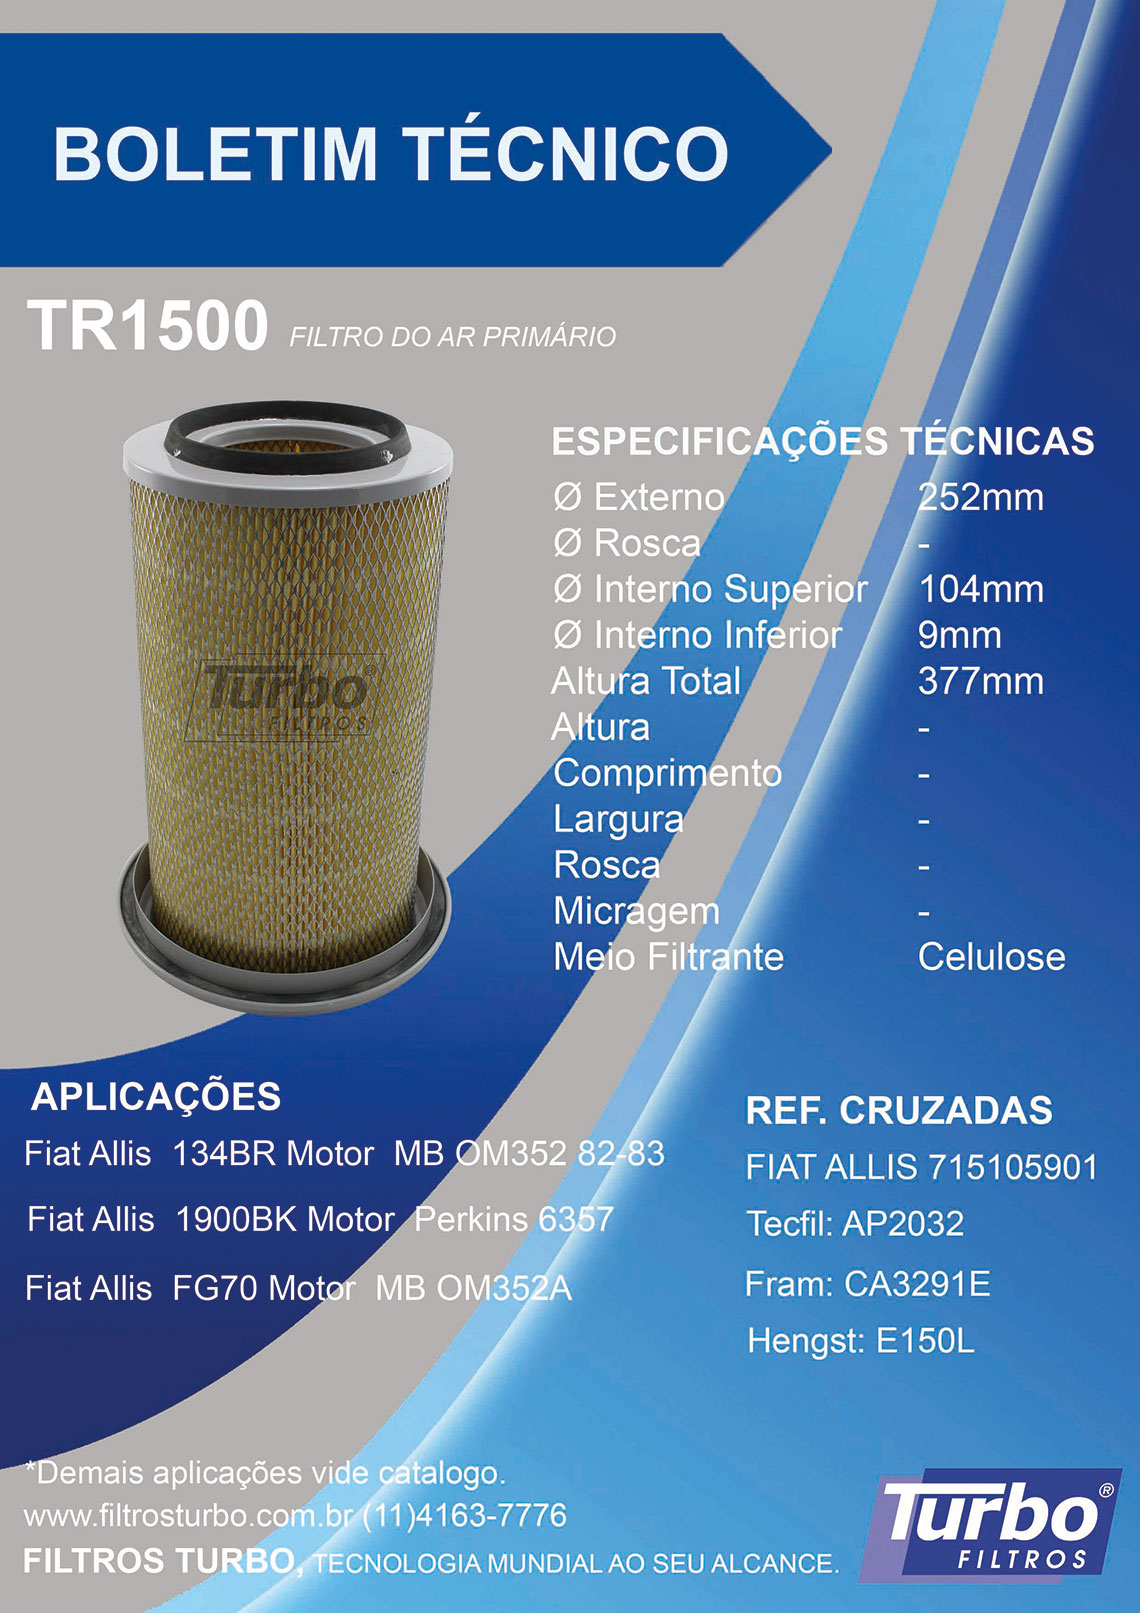 TR1500 - Filtros Turbo